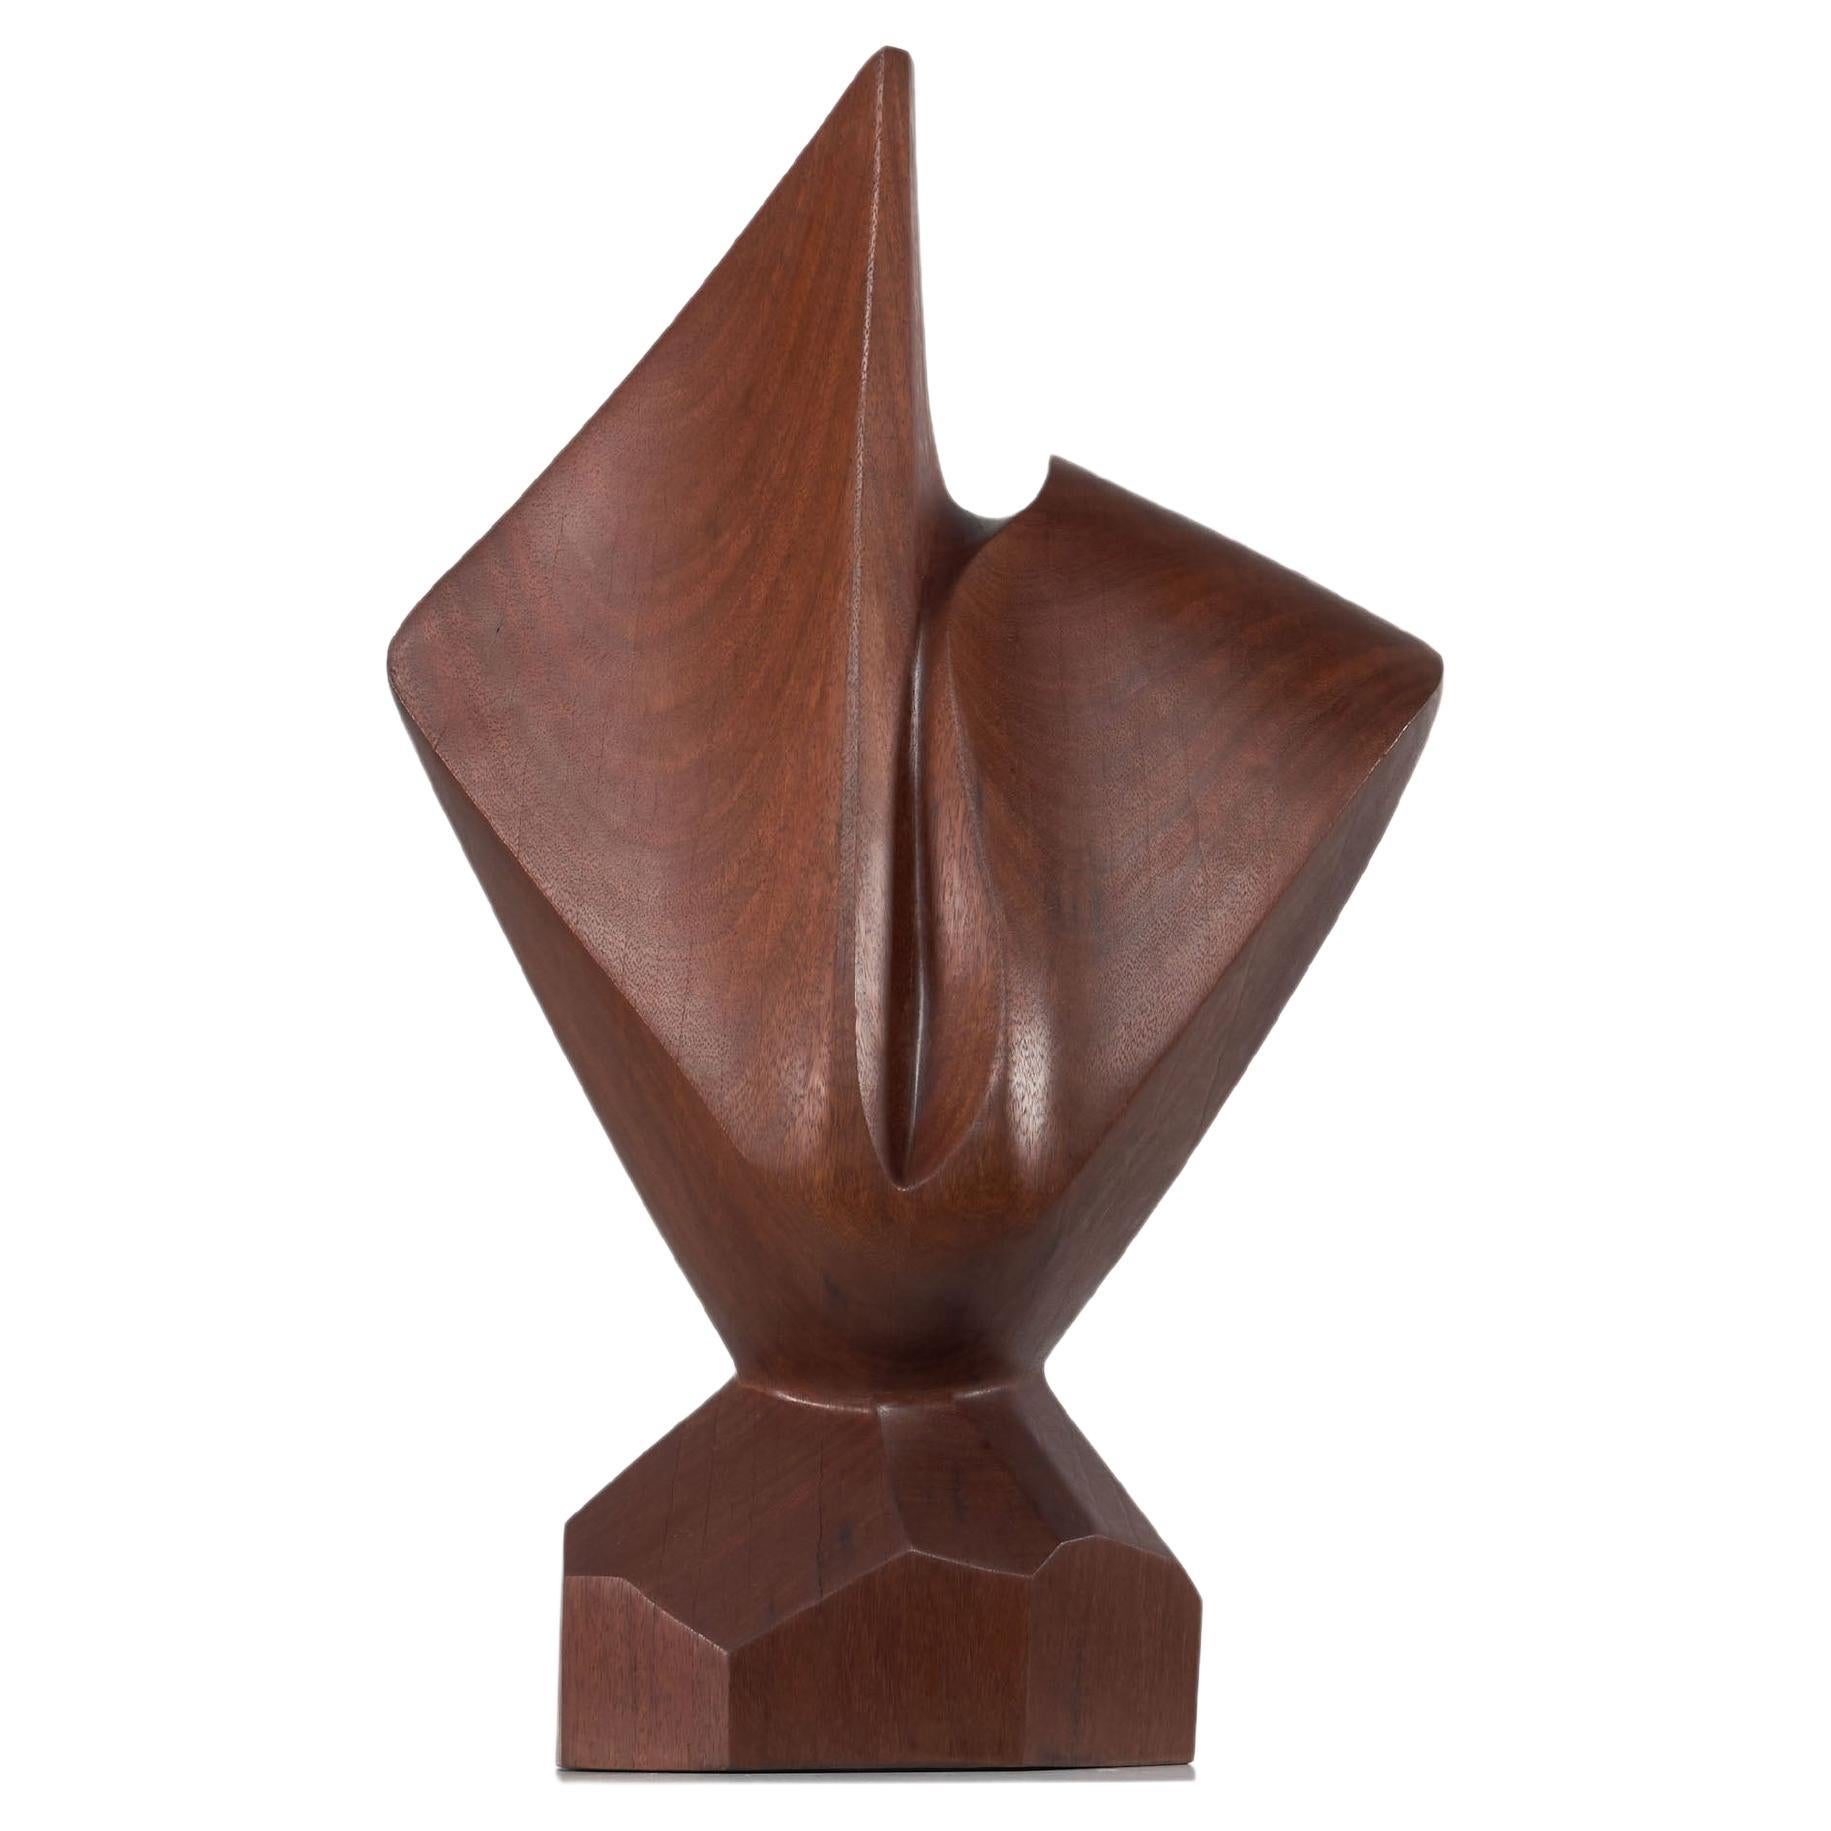 H Louis Noel, sculpture abstraite kambala, Belgique 1989